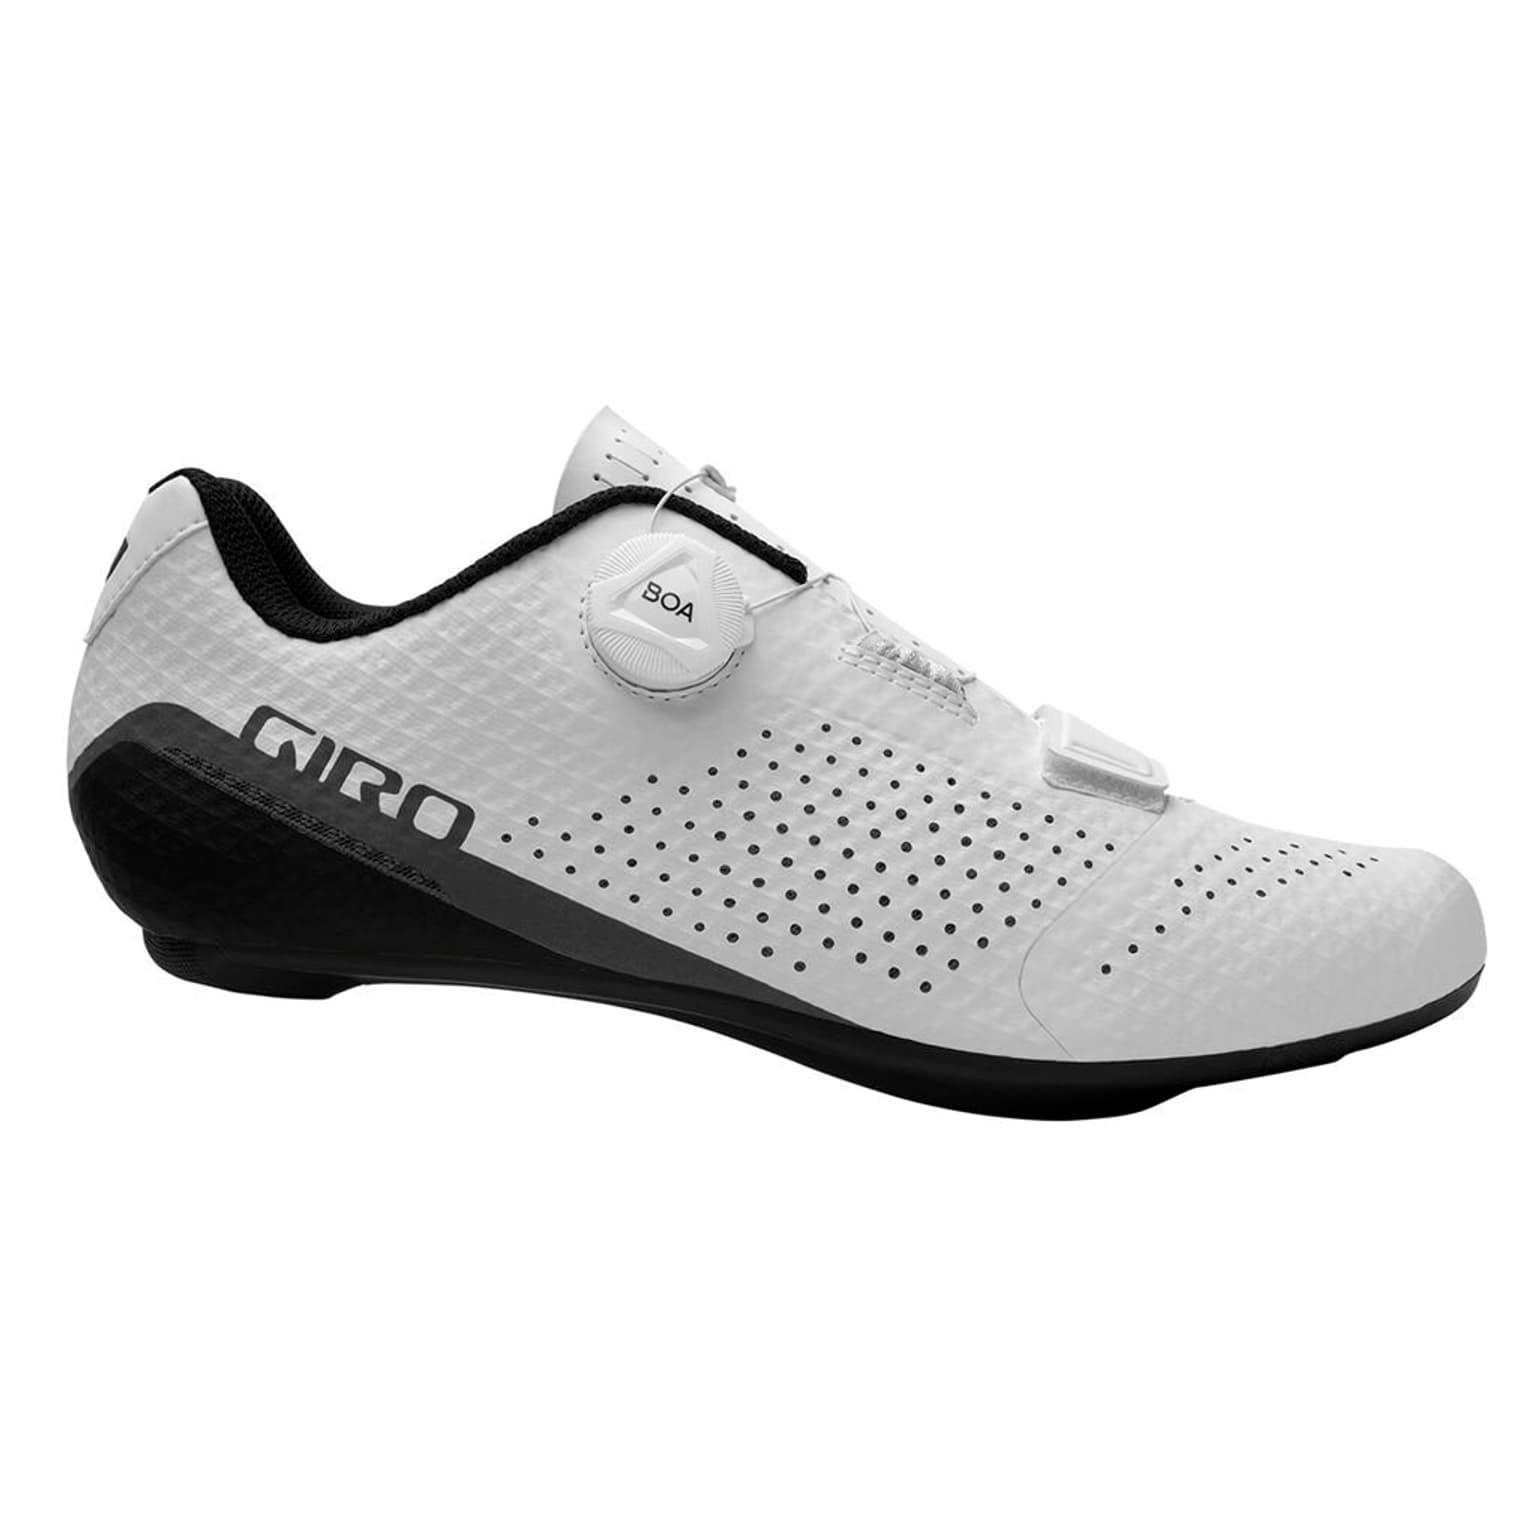 Giro Giro Cadet Shoe Chaussures de cyclisme blanc 1